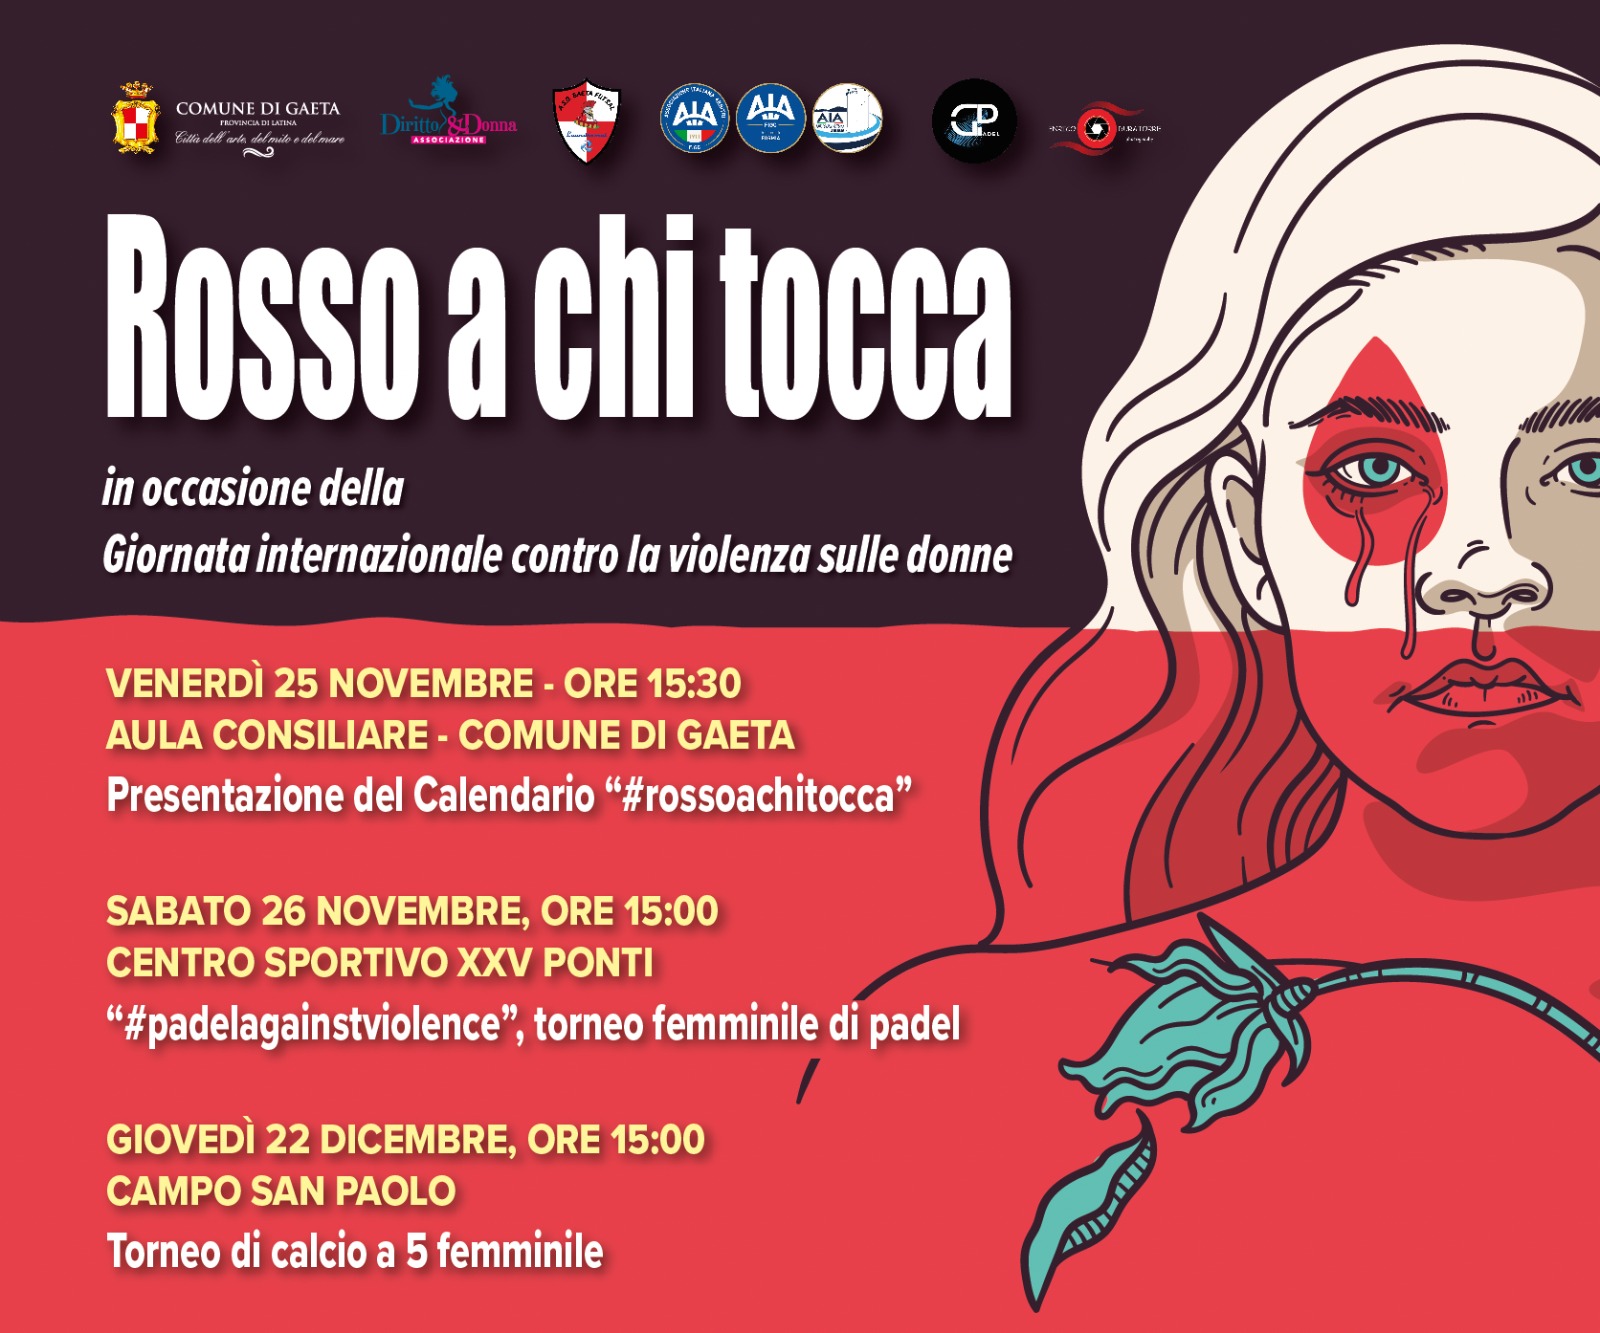 "Rosso a chi tocca", un calendario di iniziative in occasione della Giornata Internazionale contro la violenza sulle donne